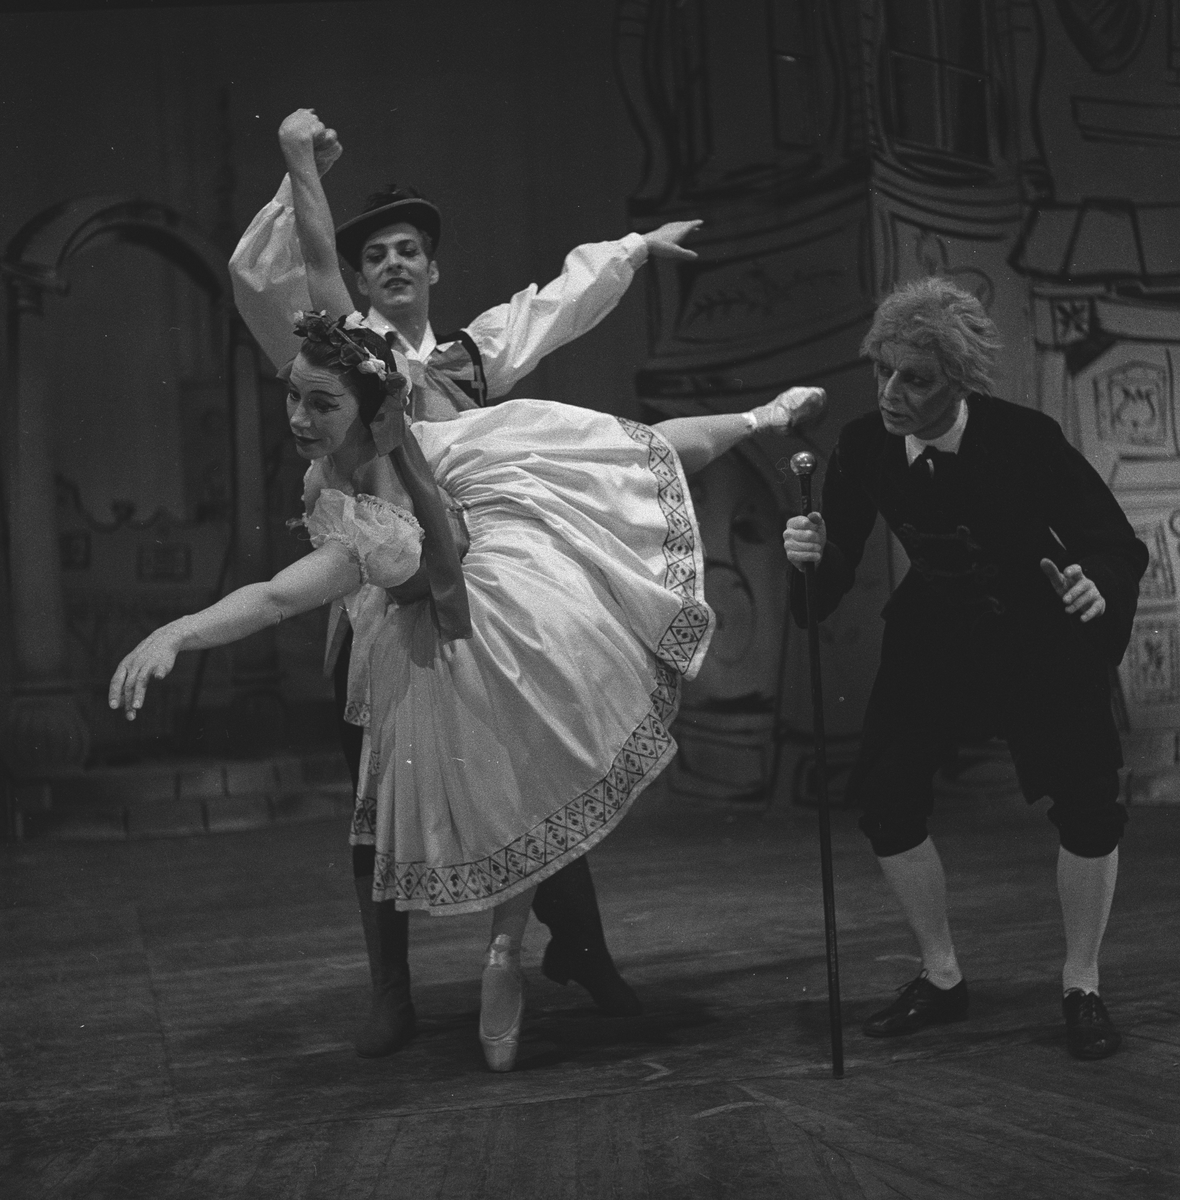 Den Norske Operaballett oppsetningen av "Coppelia" på Folketeatret. Dansere på scenen. Fotografert mars 1959.